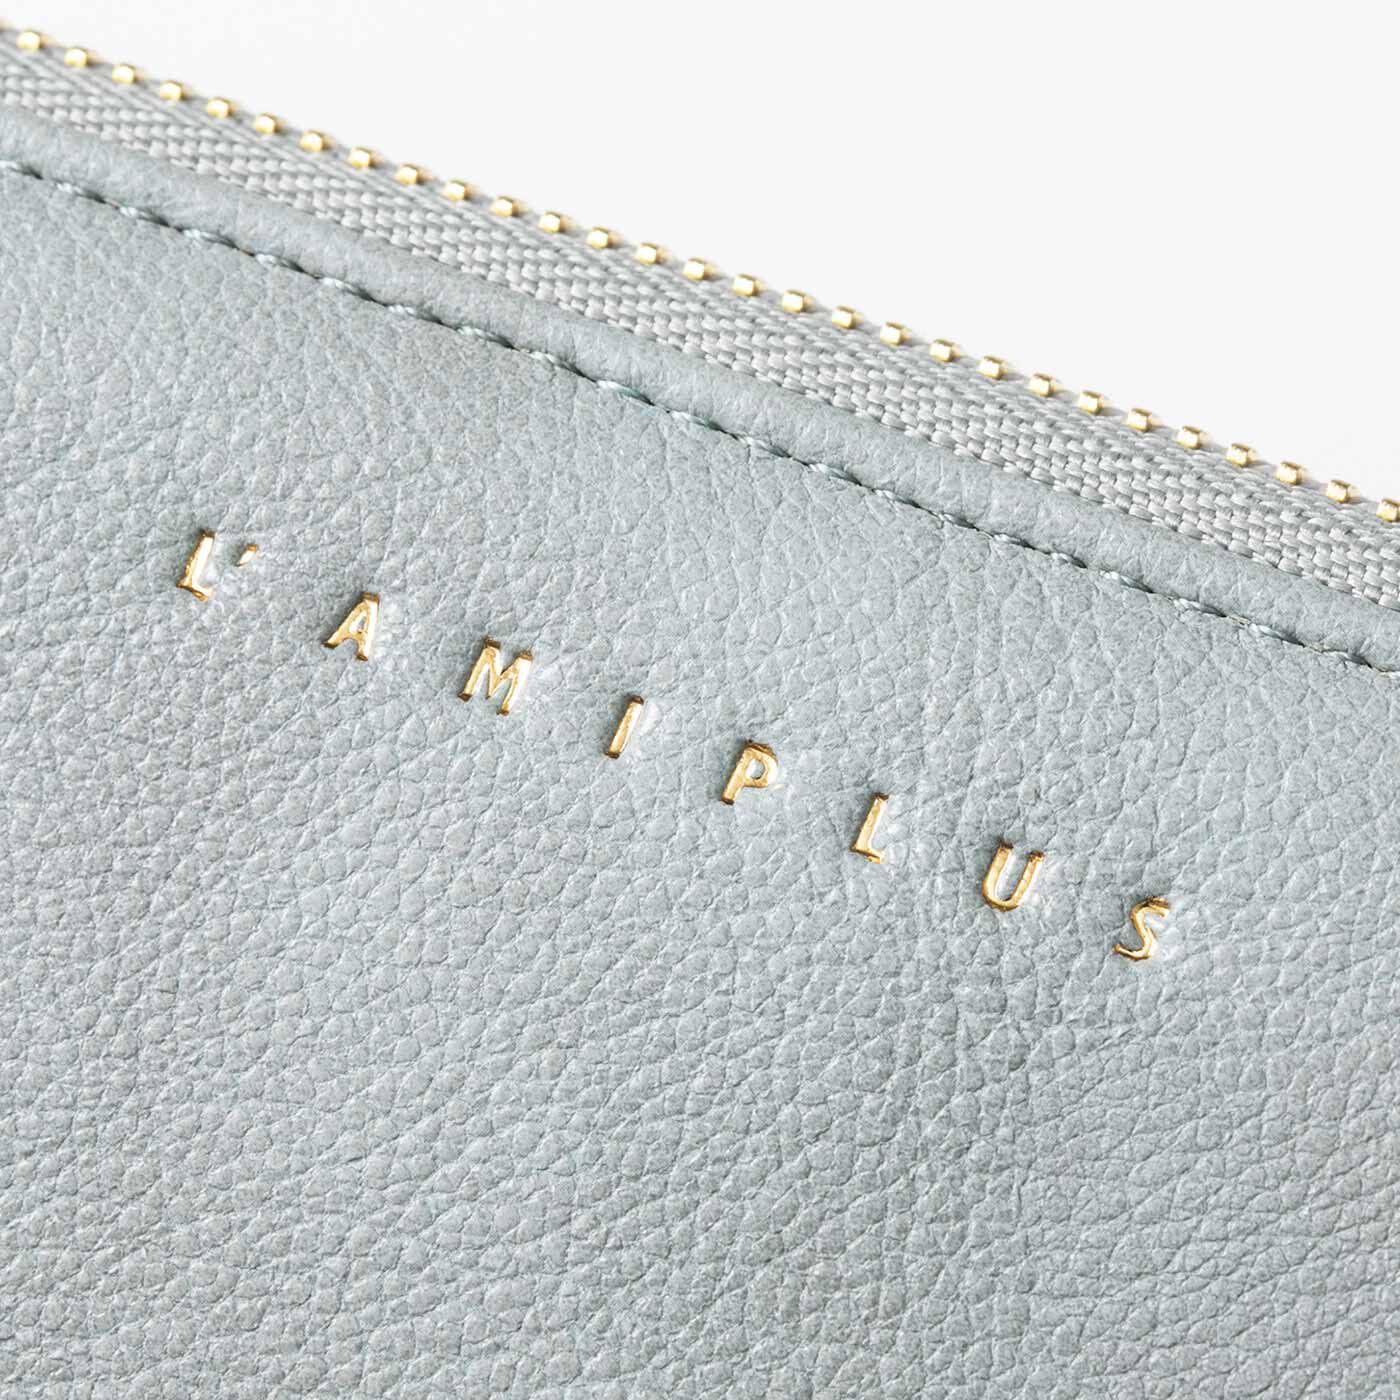 Real Stock|ラミプリュス　ひと目でわかる じゃばらのカードケースでスイスイ コインスルー長財布|ムラ感のある上品な合成皮革に箔押しのロゴがアクセント。